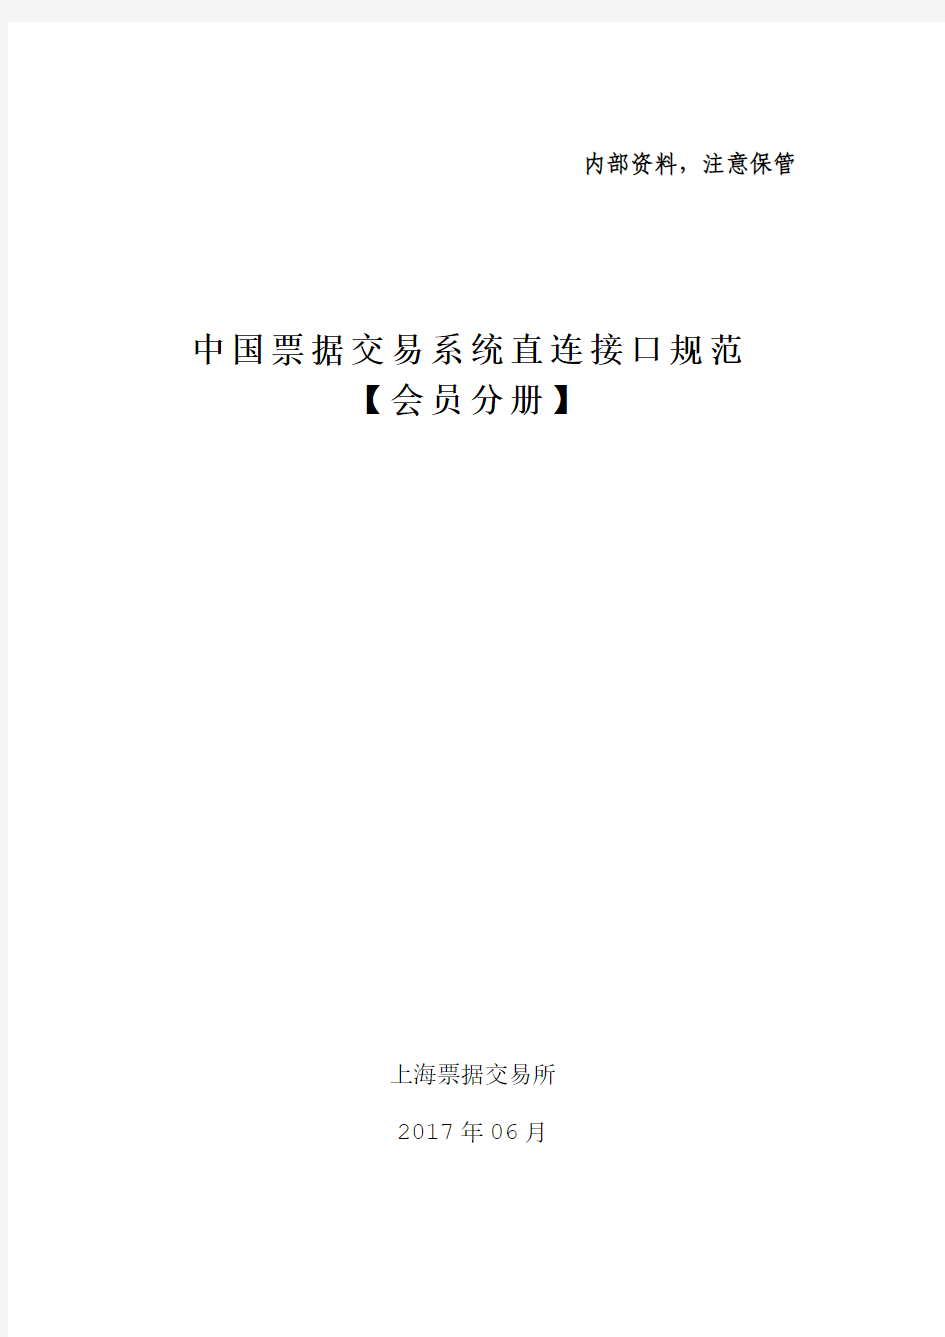 2.中国票据交易系统直连接口规范(会员分册)